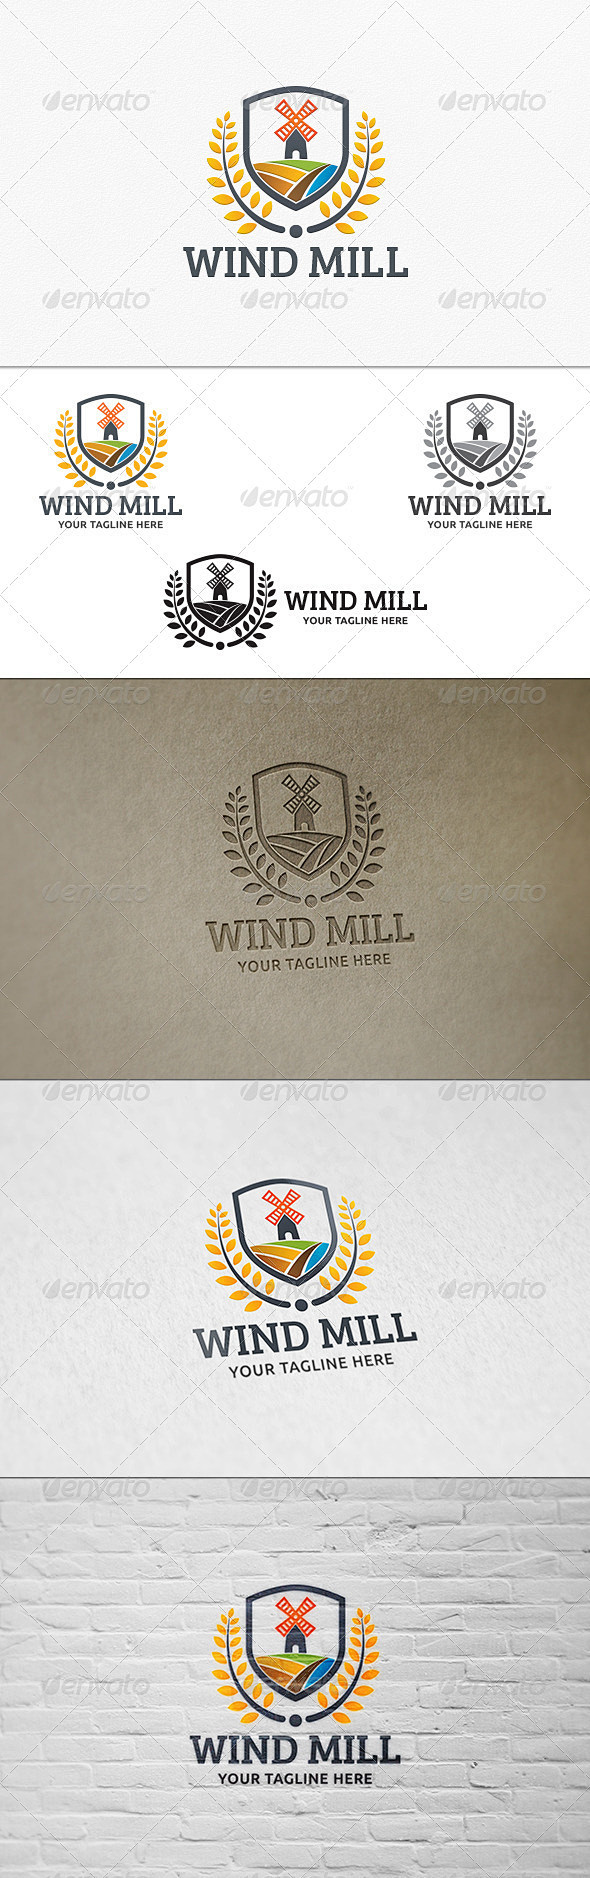 风力机-标志模板建筑标志模板Wind M...